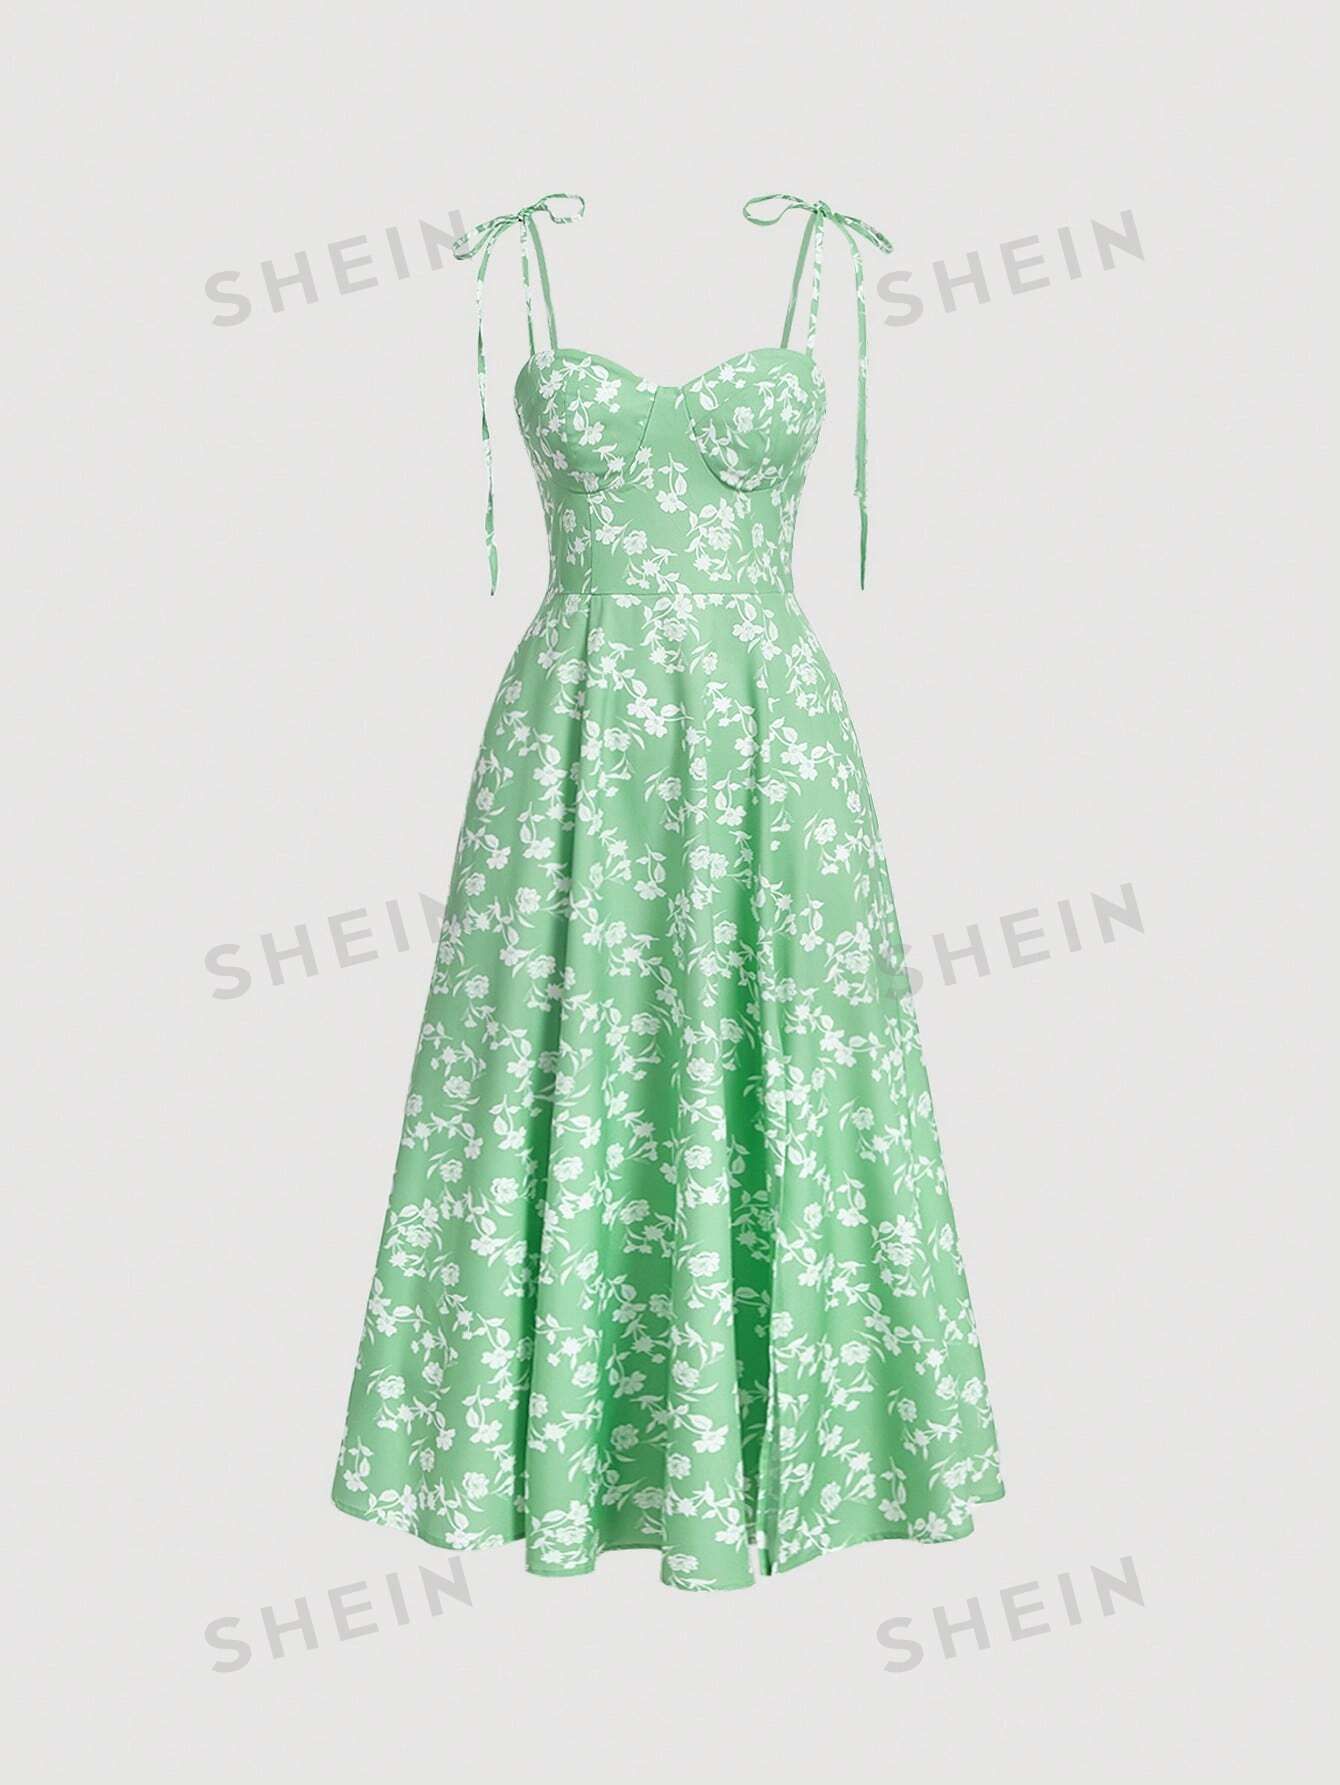 SHEIN MOD Allover Floral Print Tie Shoulder Cami Dress | SHEIN